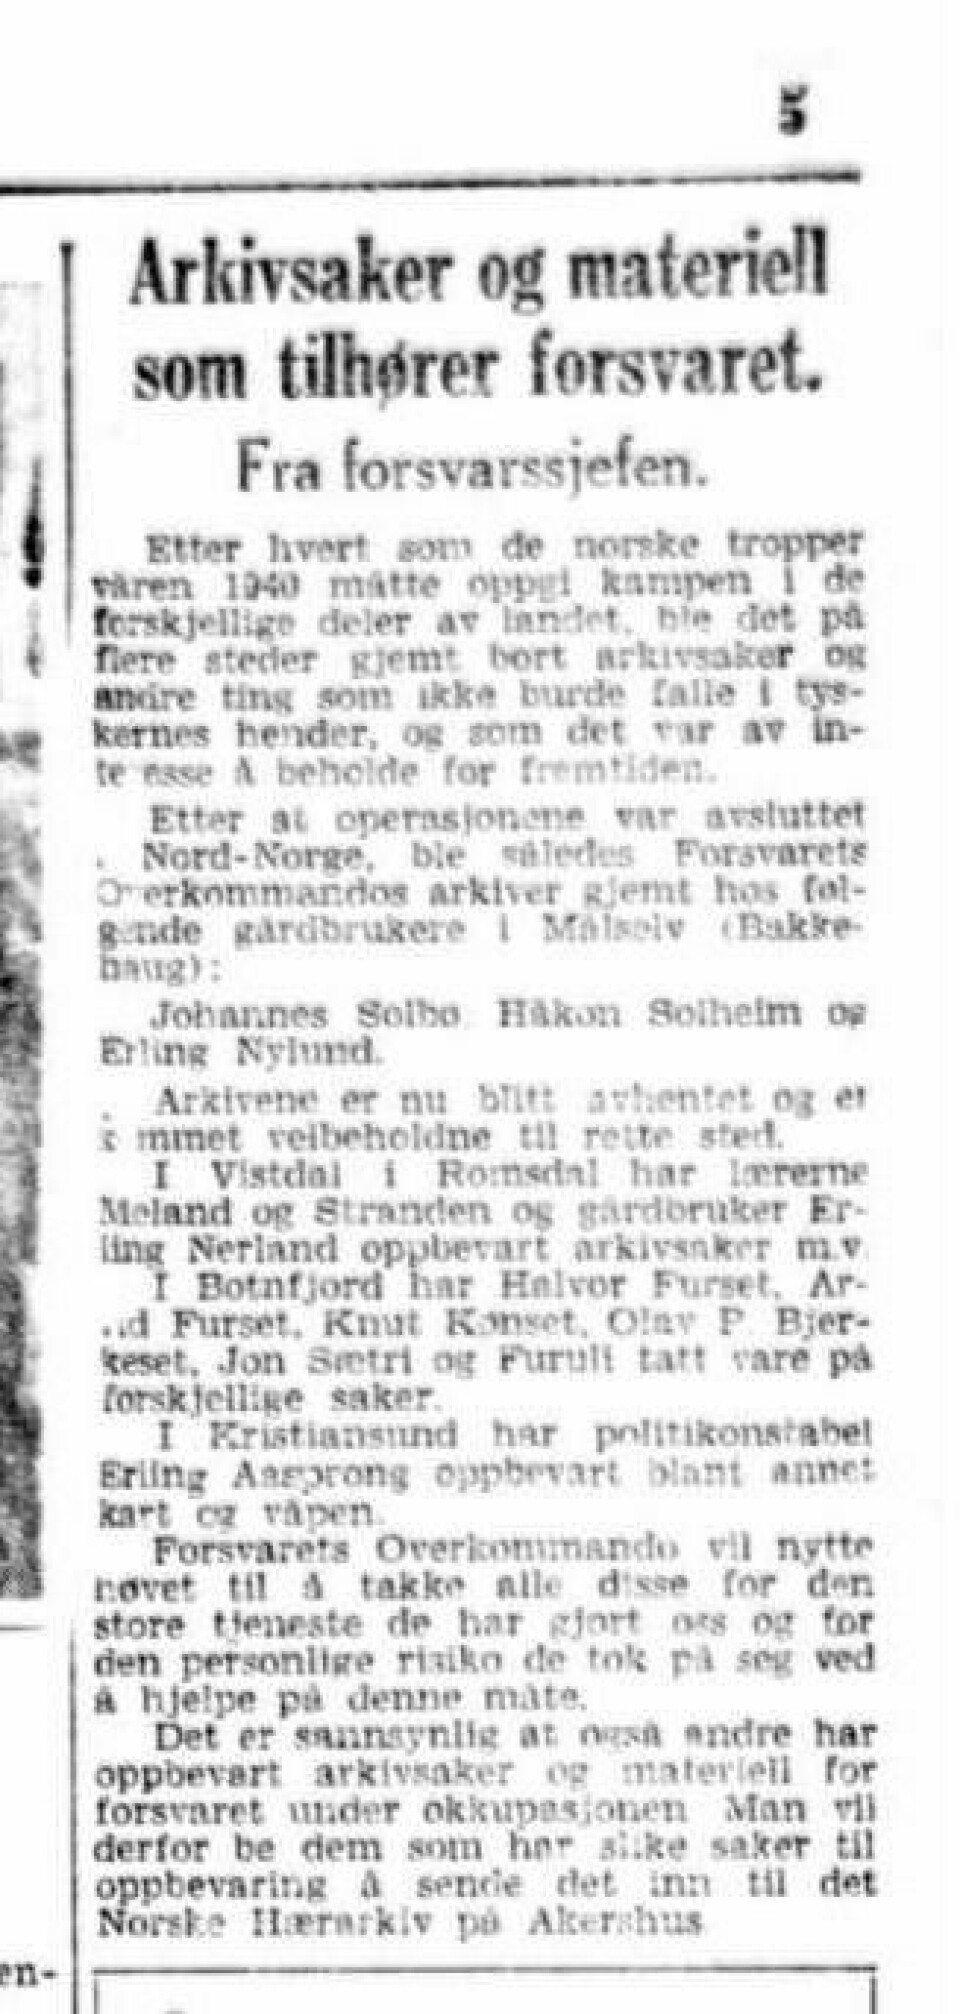 ARKIV PÅ AVVEIE: Denne notisen sto på trykk i Aftenposten 24. september 1945. I den skrev forsvarssjef Otto Ruge at arkivet til Forsvarets overkommando var kommet til rette i Målselv. Etter det forsvant arkivet.